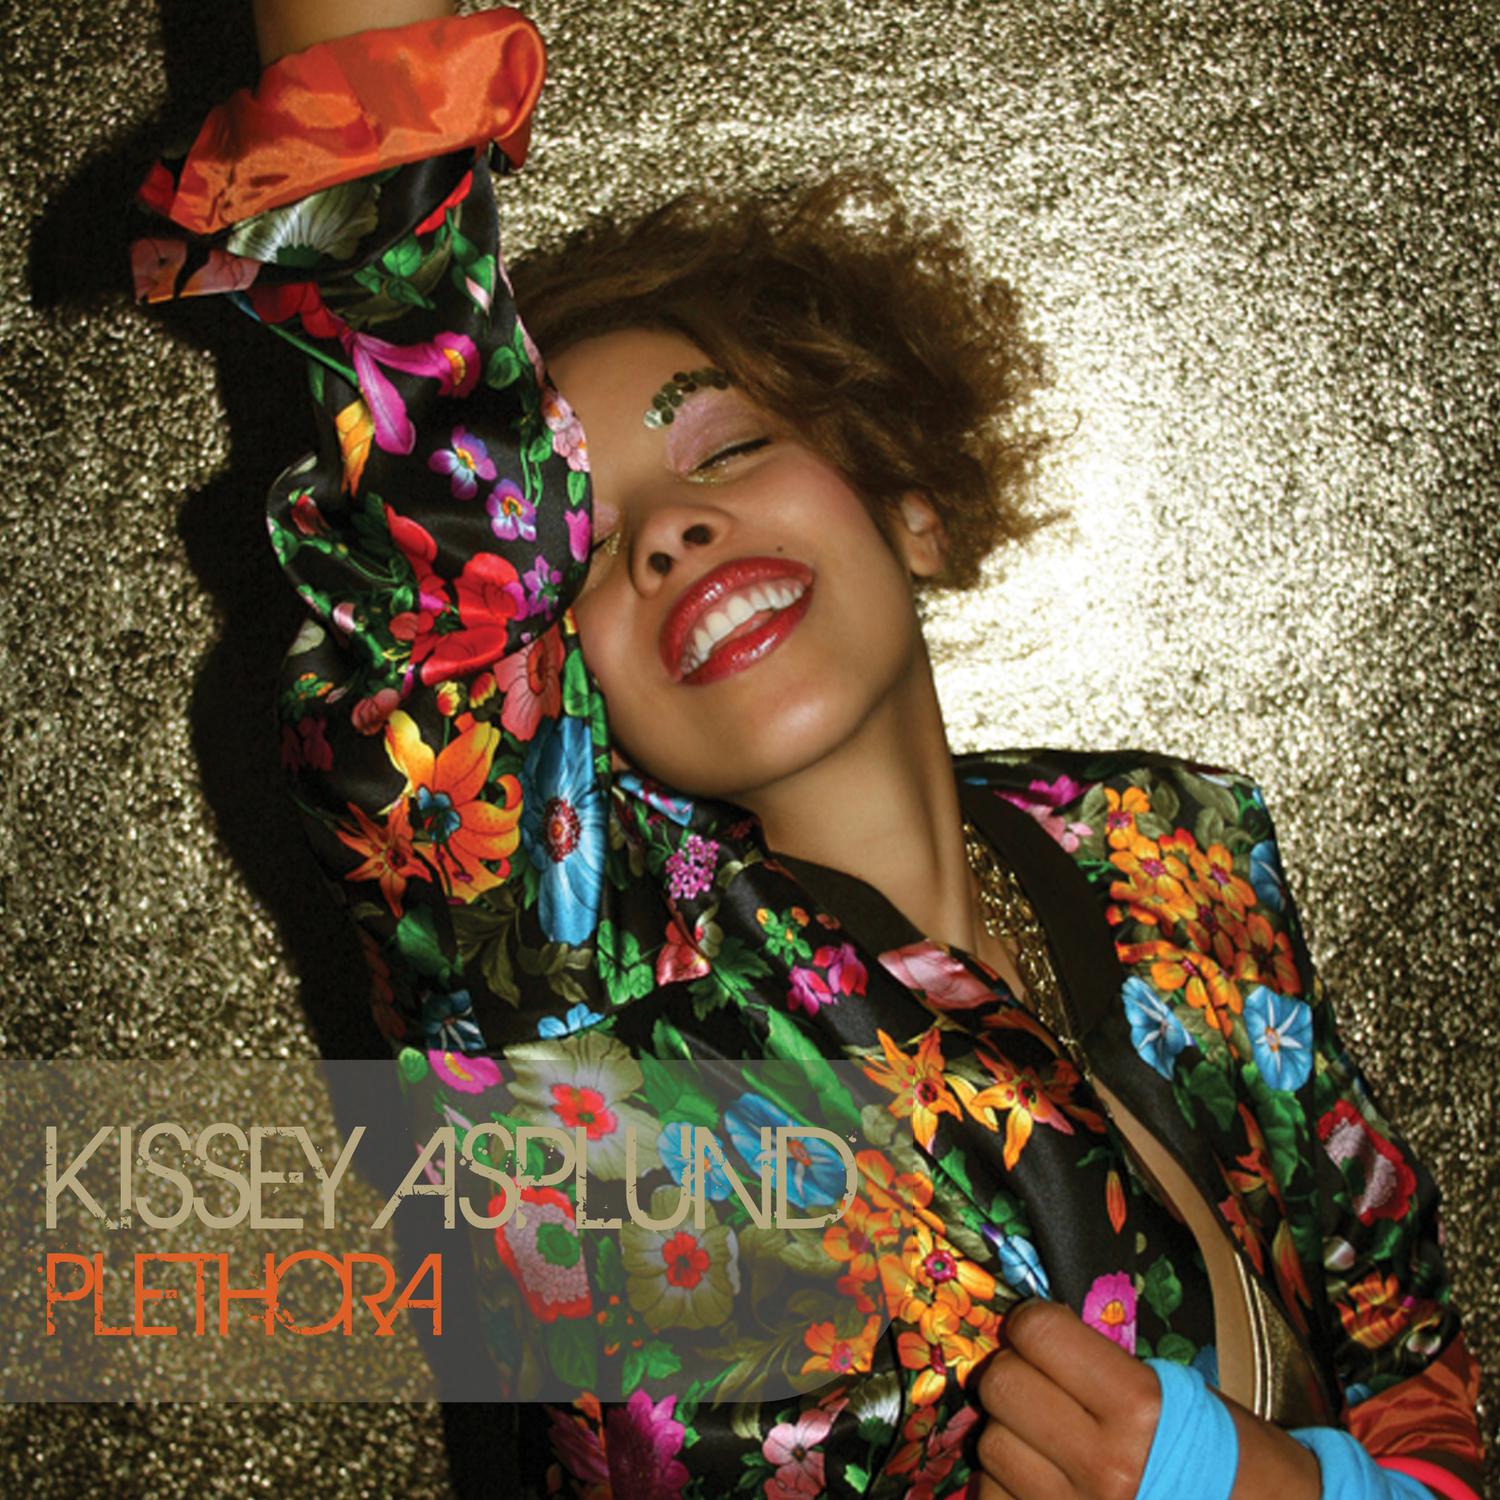 Kissey Asplund - Still the Baddest (Intro)